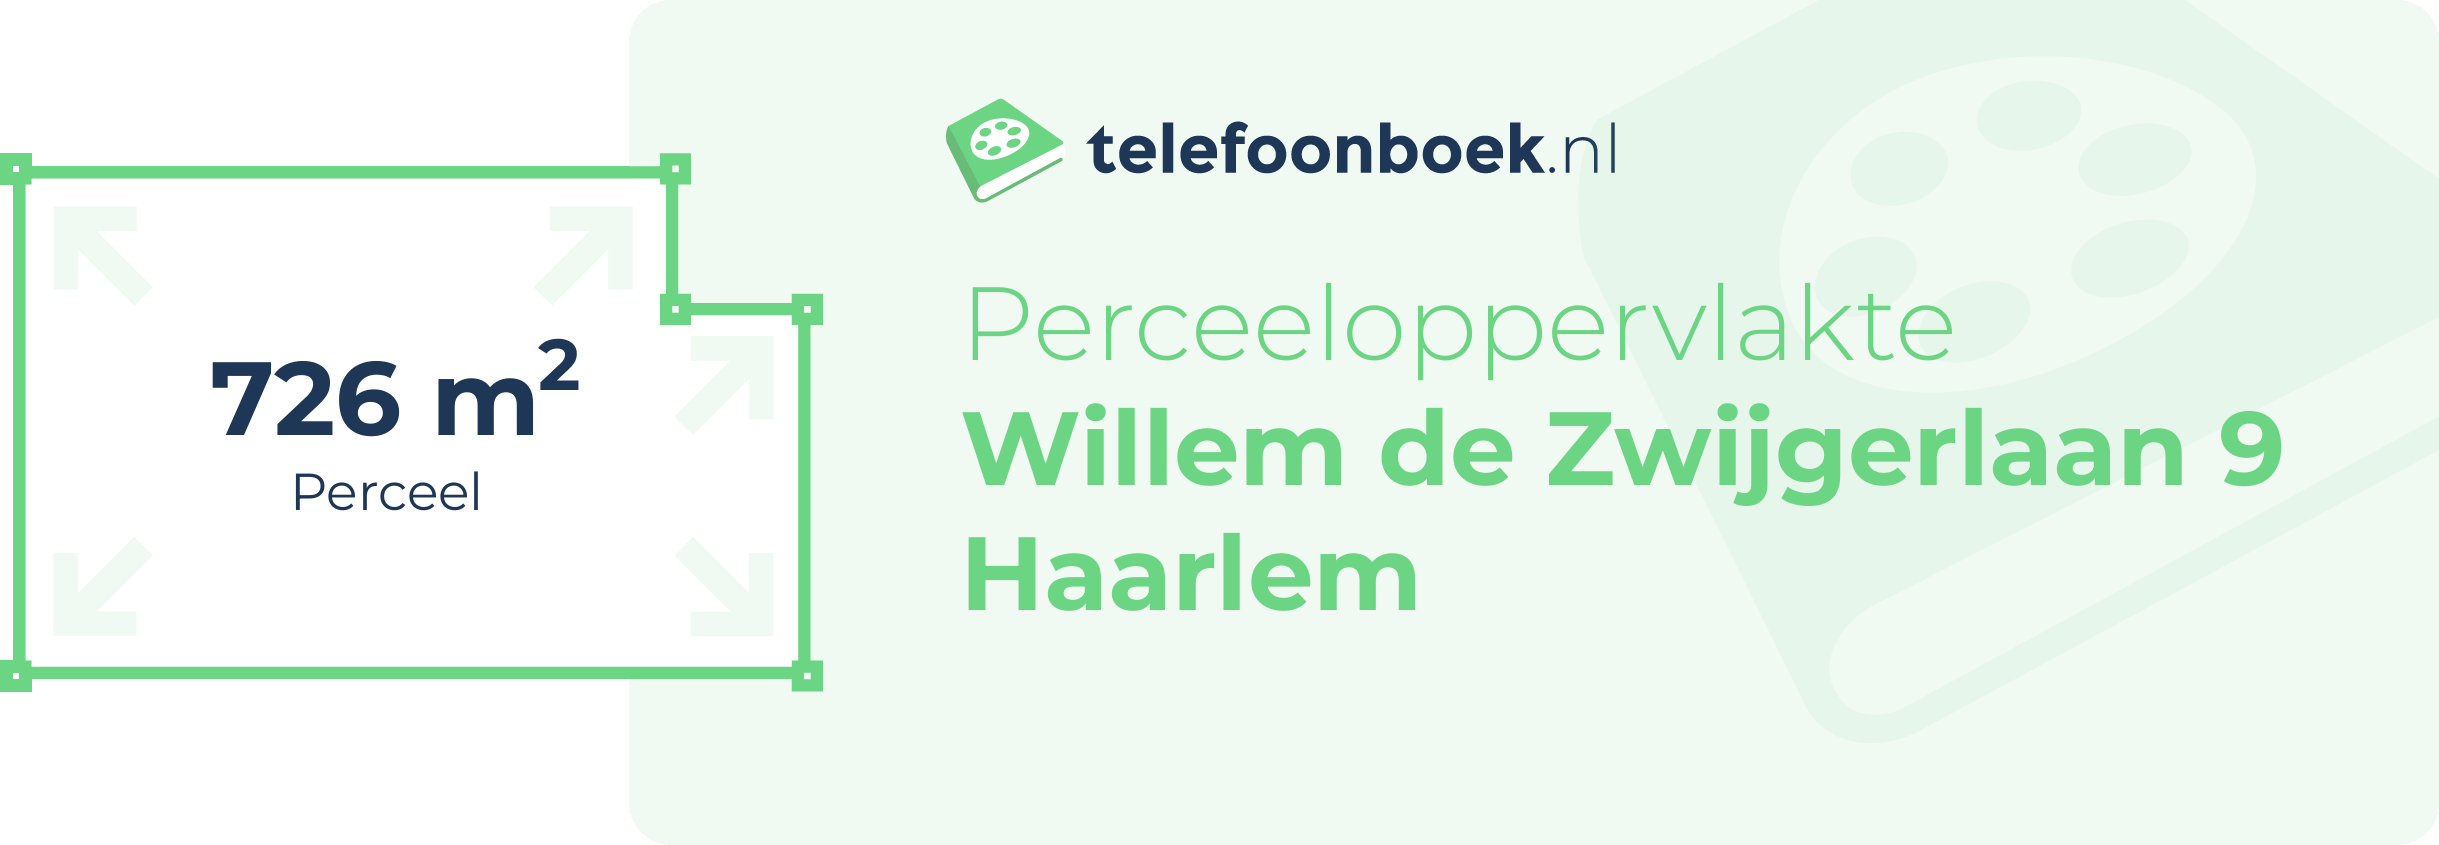 Perceeloppervlakte Willem De Zwijgerlaan 9 Haarlem